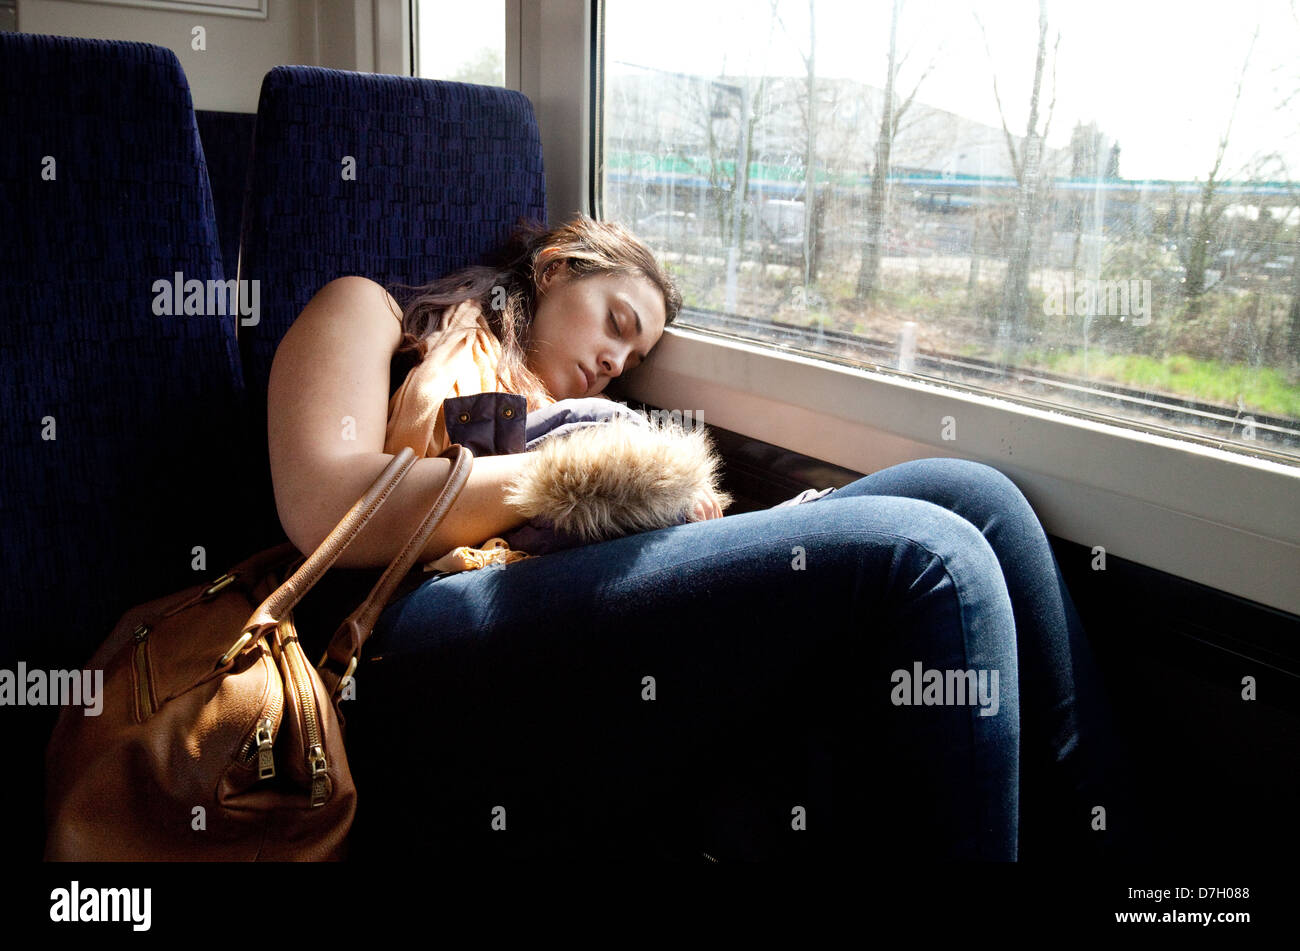 Une jeune femme dort sur le train, Trains, transport ferroviaire sud-est sud-est de Londres, UK Banque D'Images